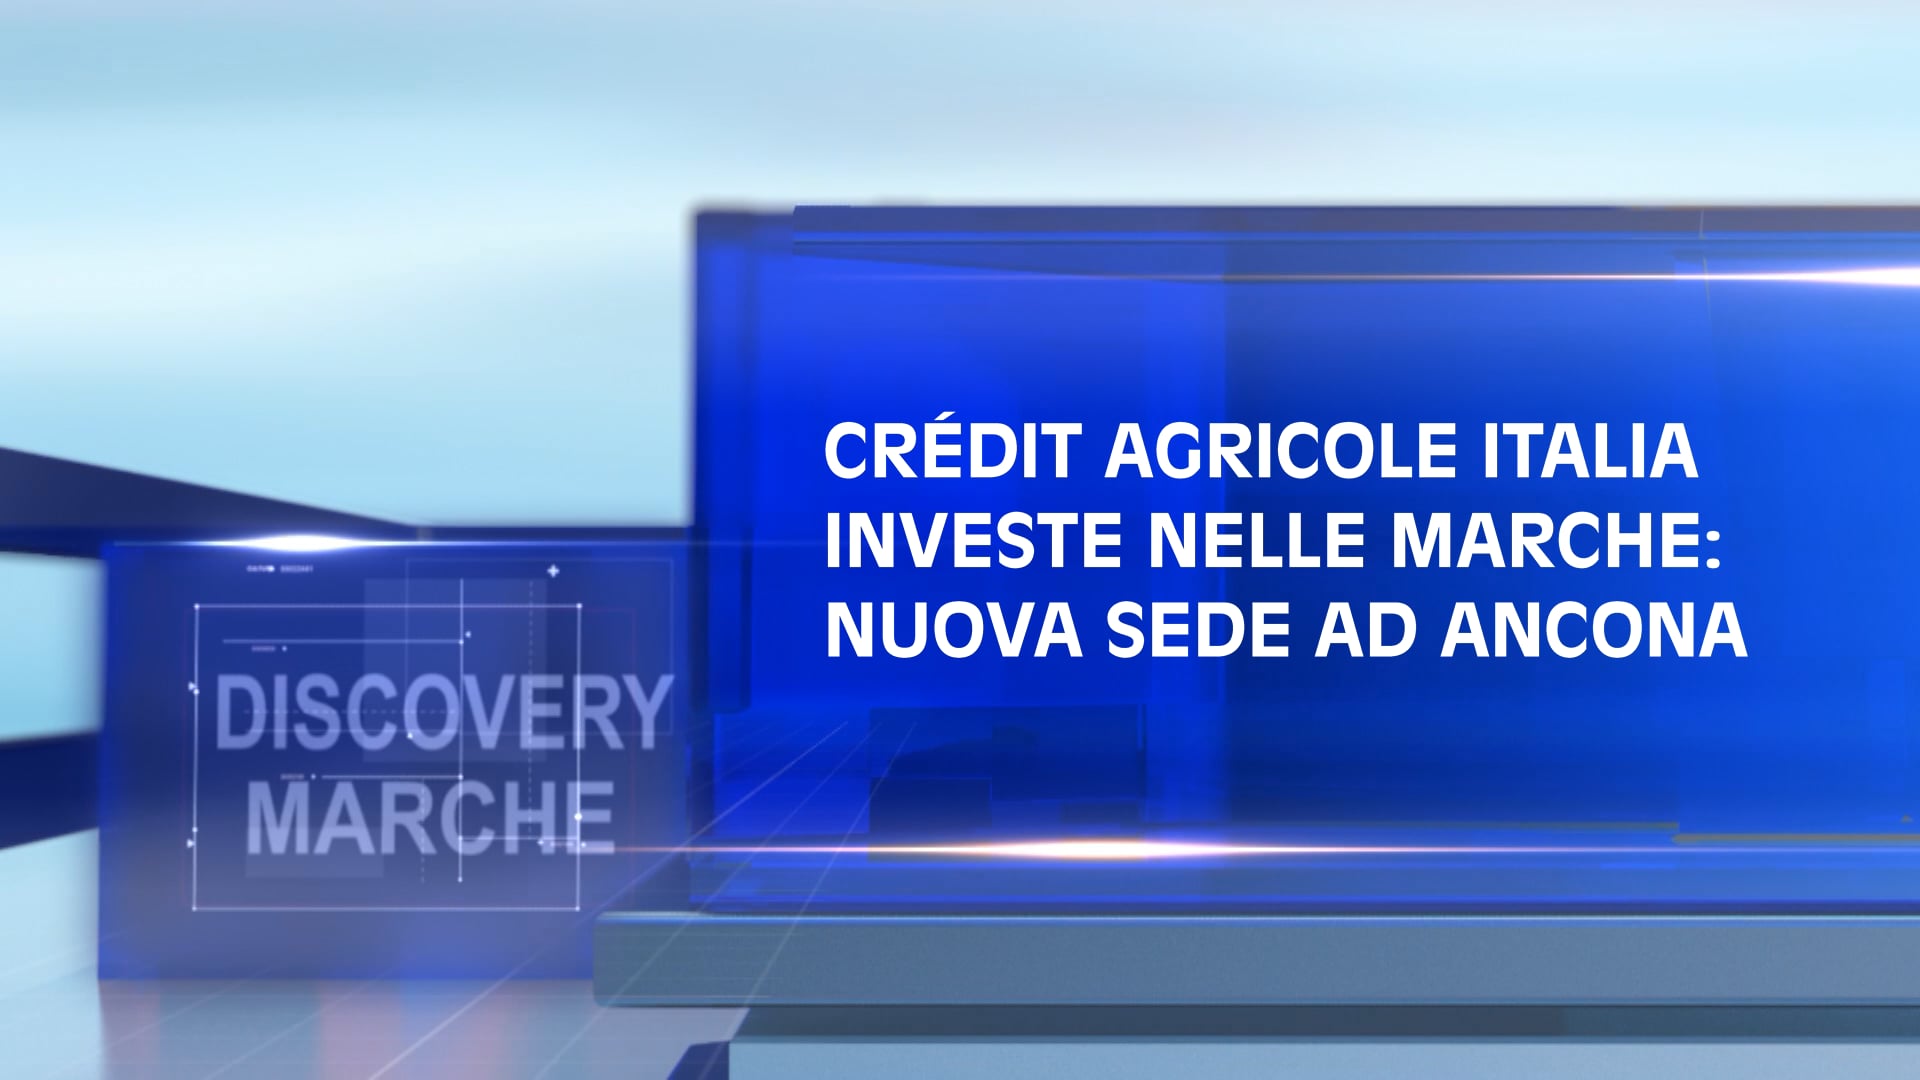 Crédit Agricole Italia investe nelle Marche: nuova sede ad Ancona - VIDEO